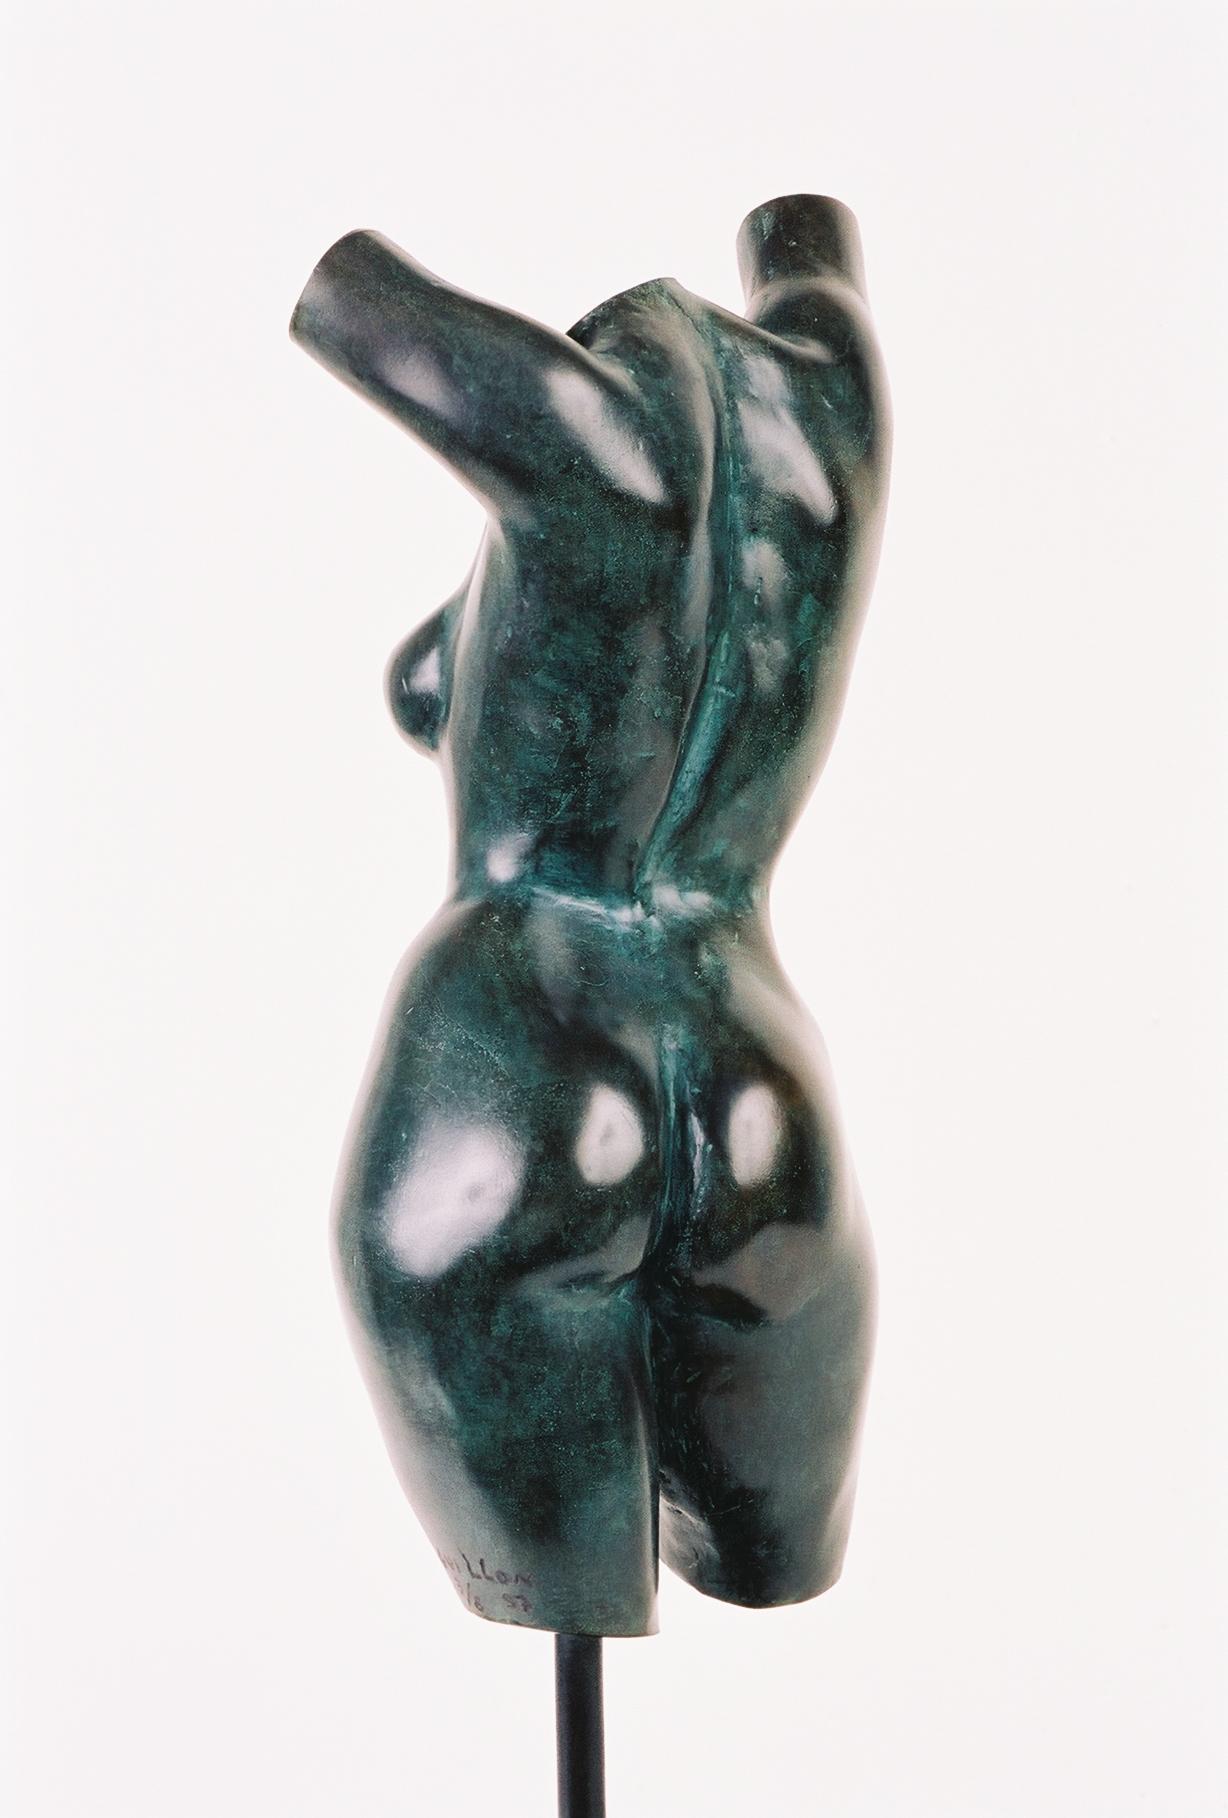 Le Torse de Caroline est une sculpture en bronze du sculpteur contemporain français Yann Guillon.
Edition limitée à 8 + 4 épreuves d'artiste. Signée et numérotée, vendue avec socle en laiton (Hauteur de la sculpture : 30 cm, hauteur totale avec